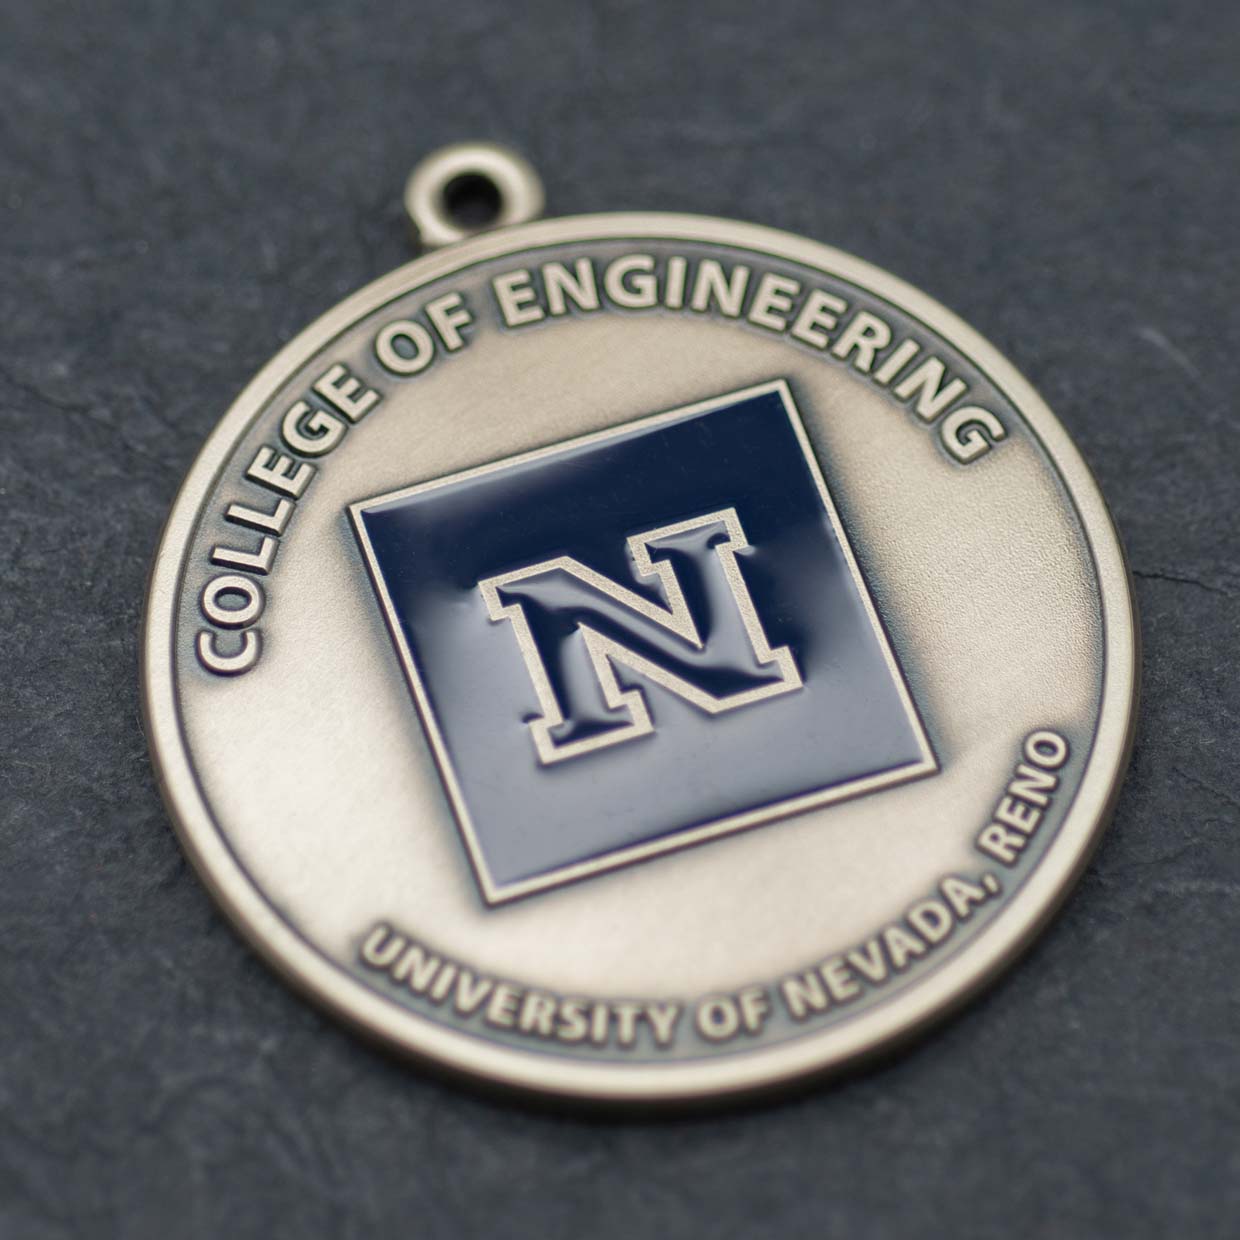 College of Engineering Medal Detail